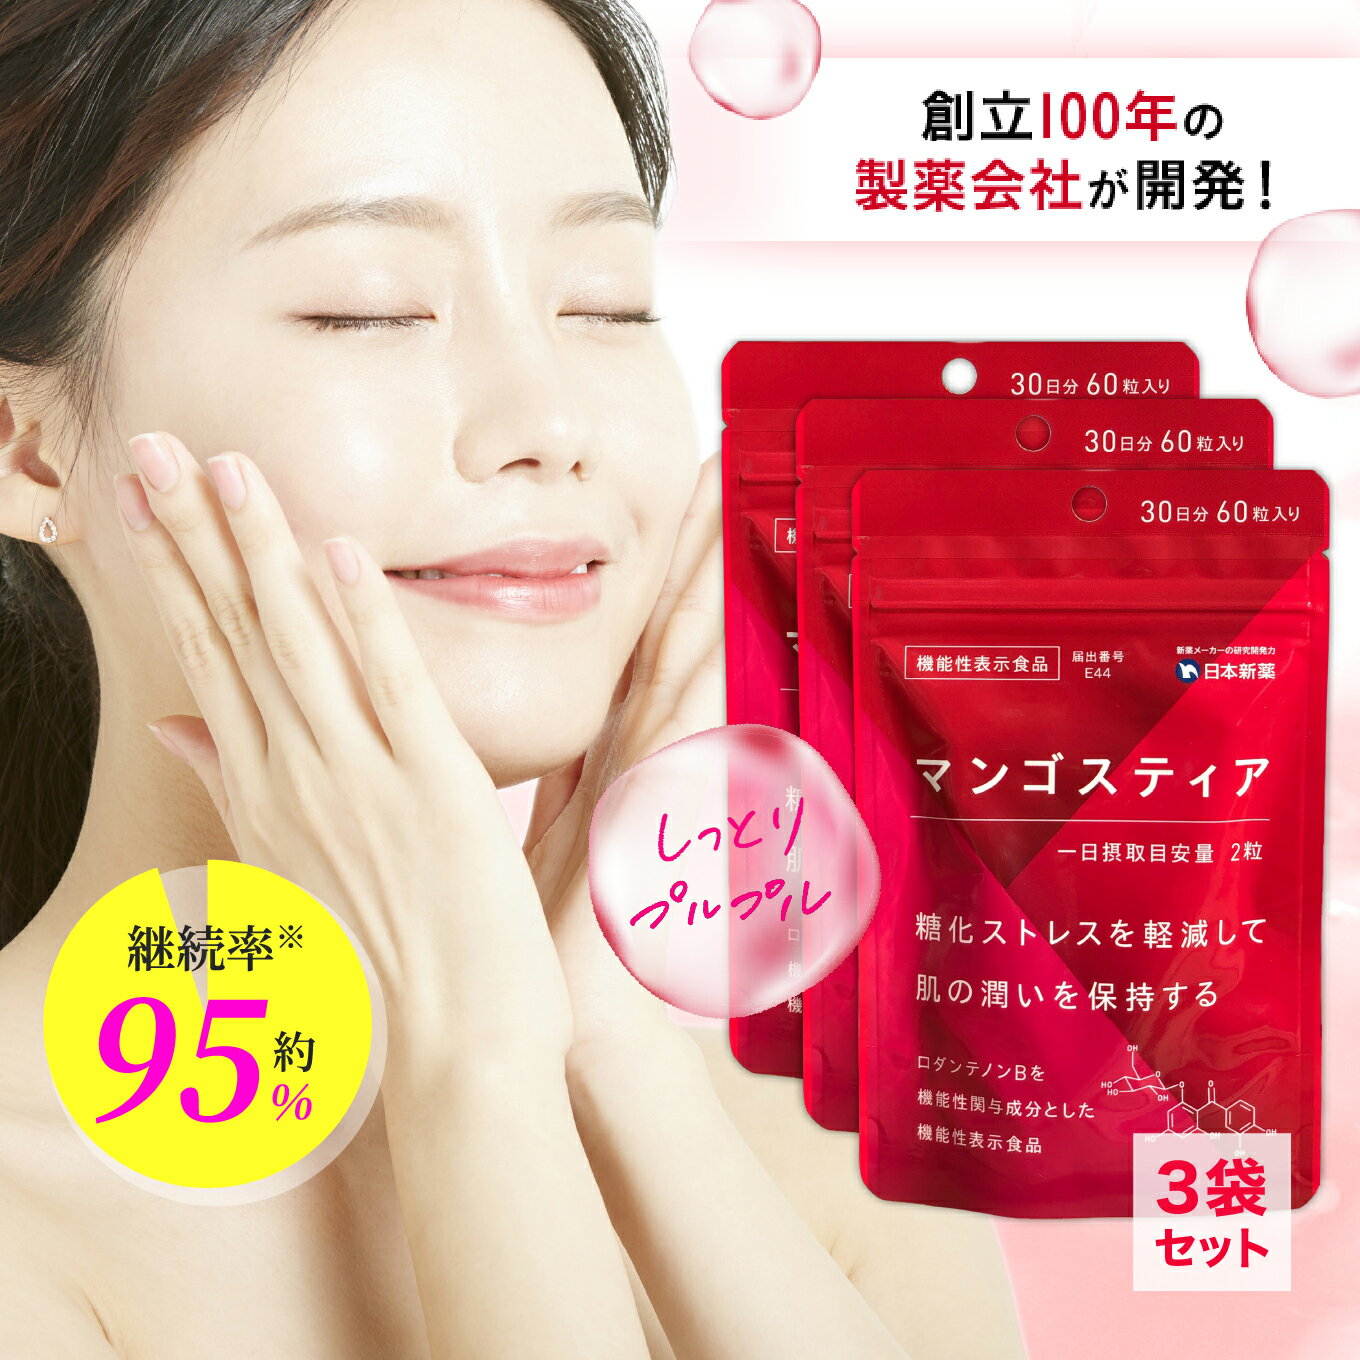 糖化サプリ マンゴスティア 3袋 90日分 日本新薬 機能性表示食品 糖化 ケア 抗糖化 サプリ サプリメント 美容 肌 潤い アンチエイジング